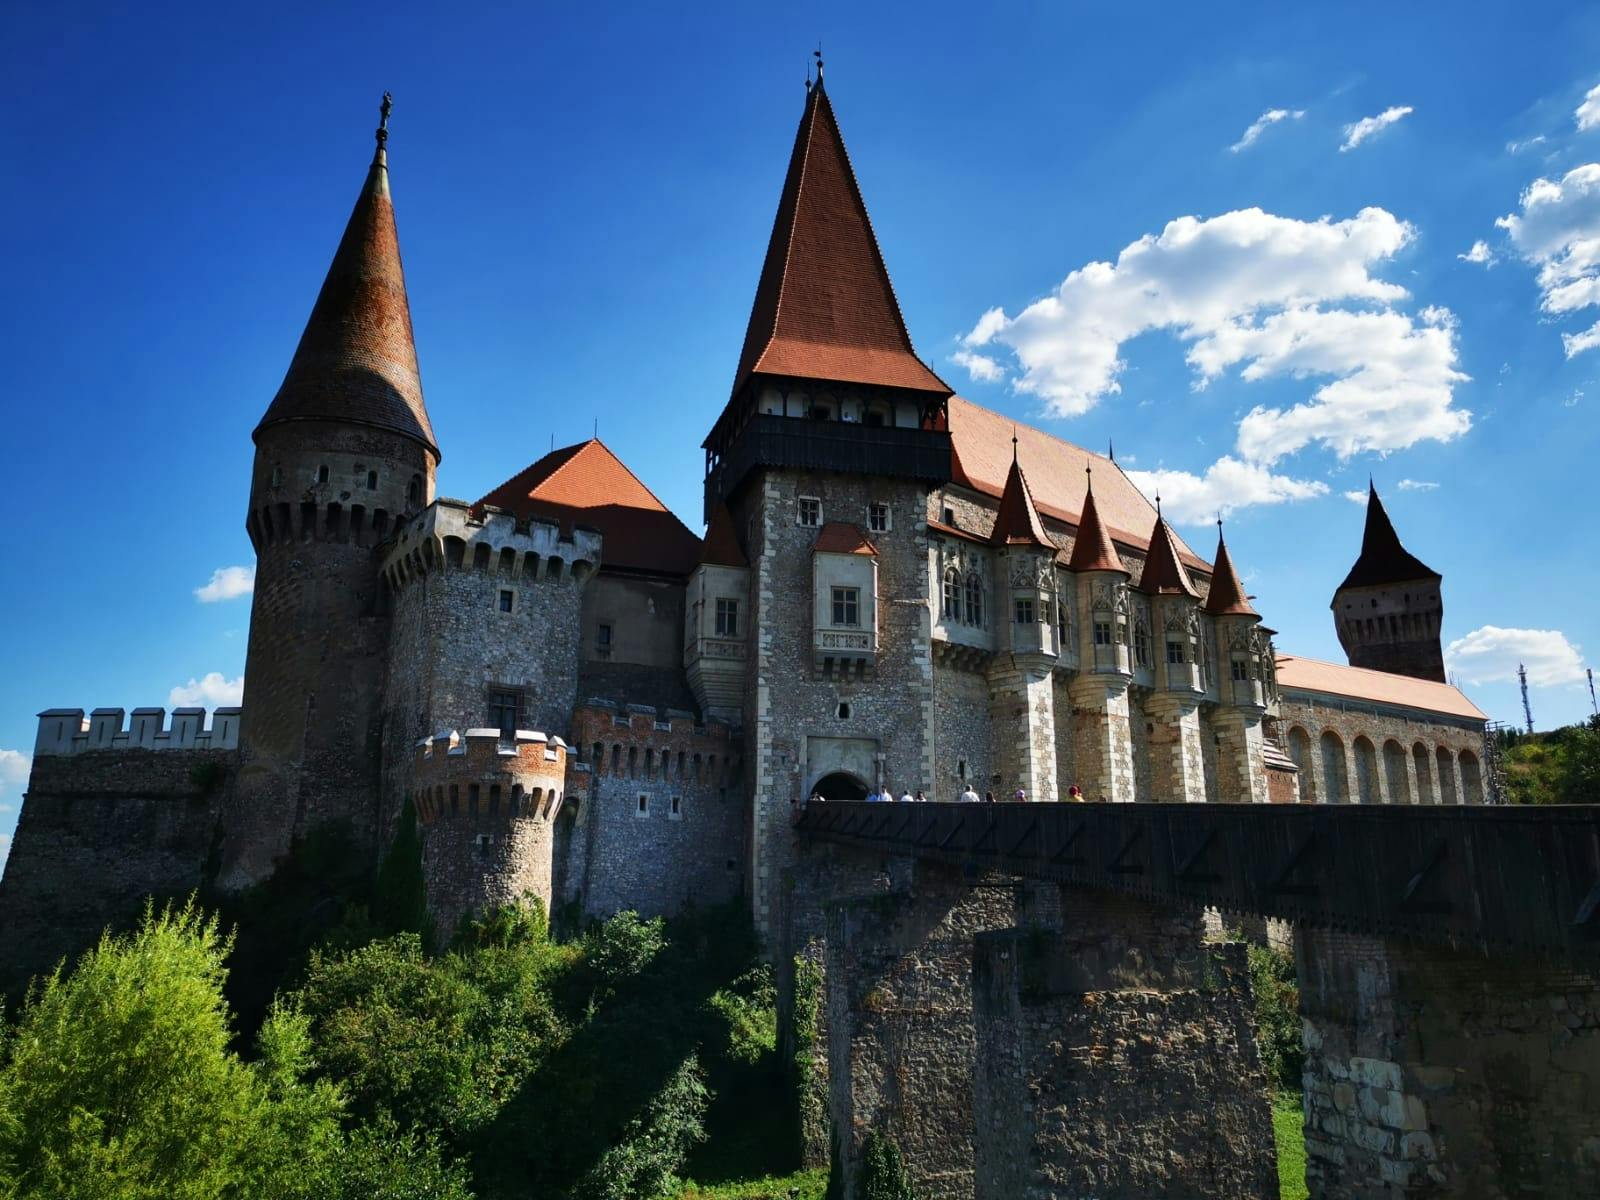 Excursão guiada à Mina de Sal Turda, Castelo Corvin e Fortaleza Alba saindo de Cluj